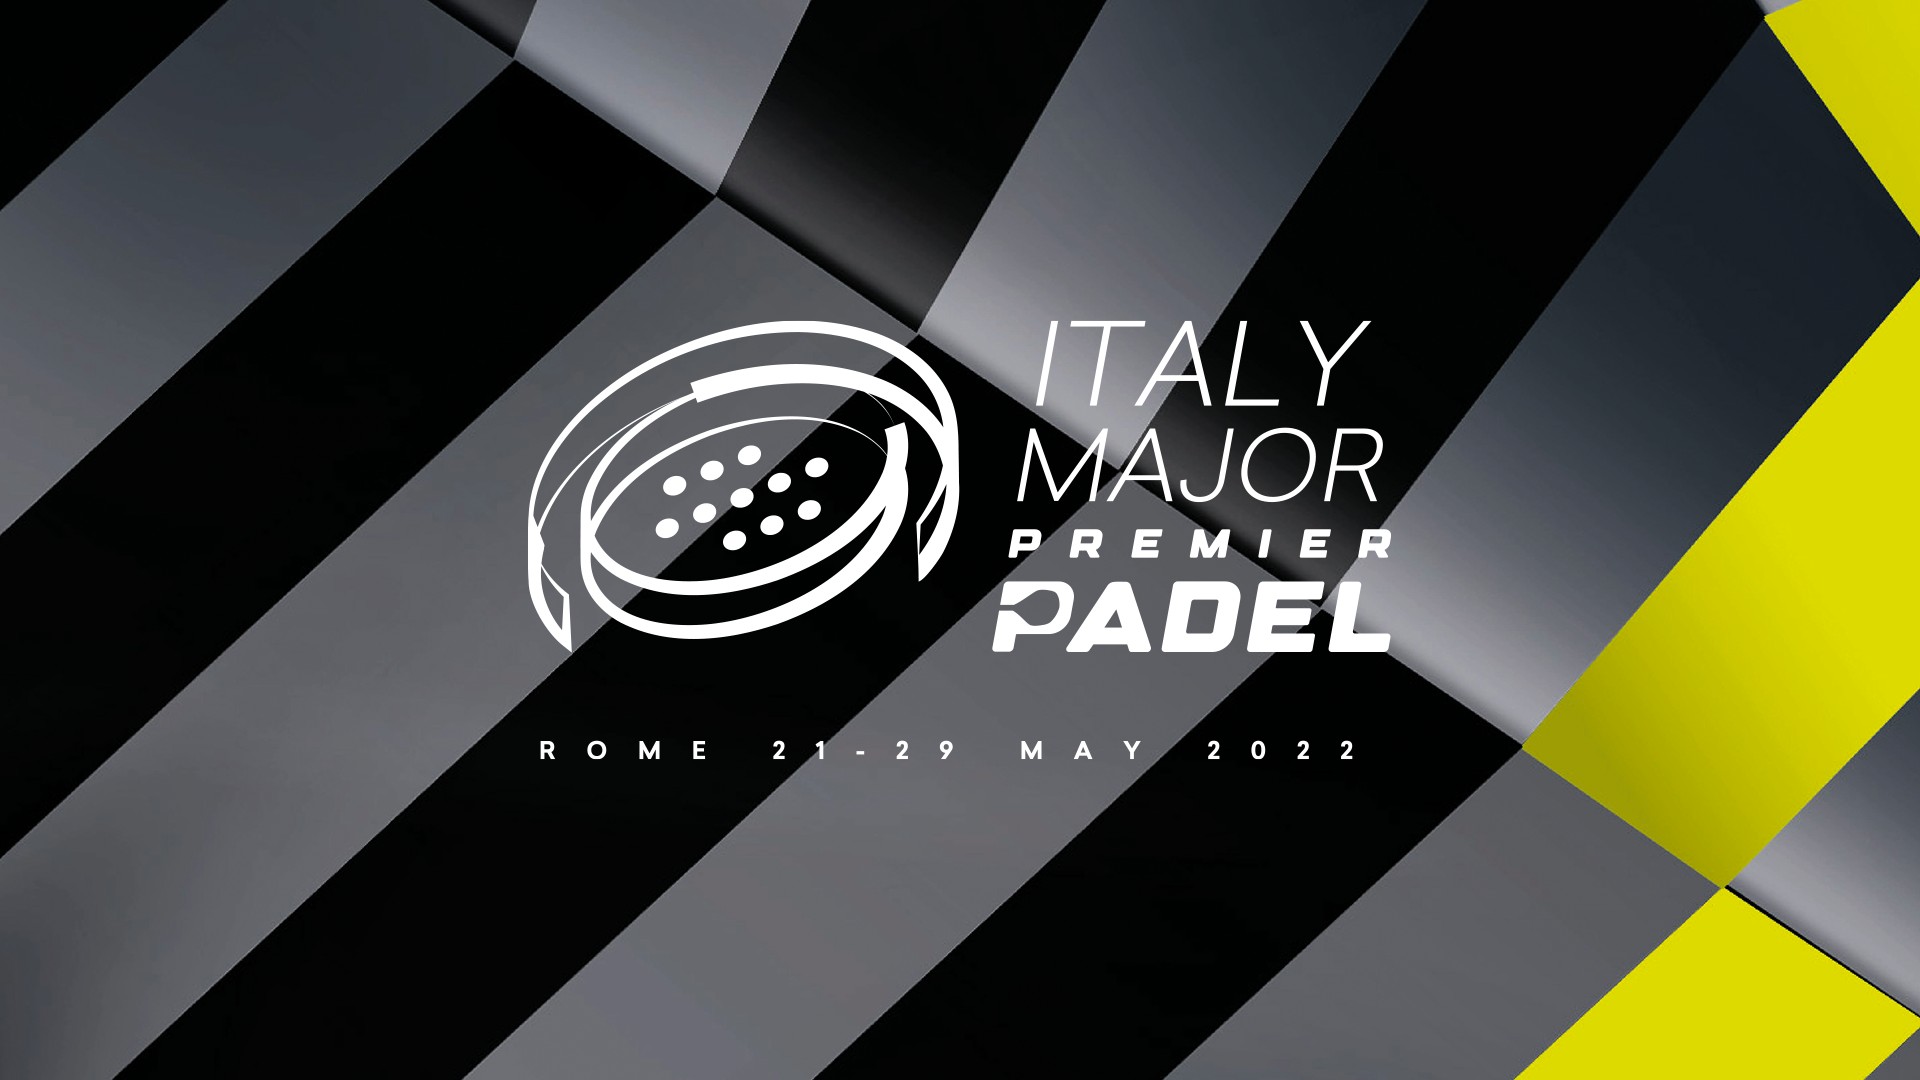 意大利语专业 premier padel 商标